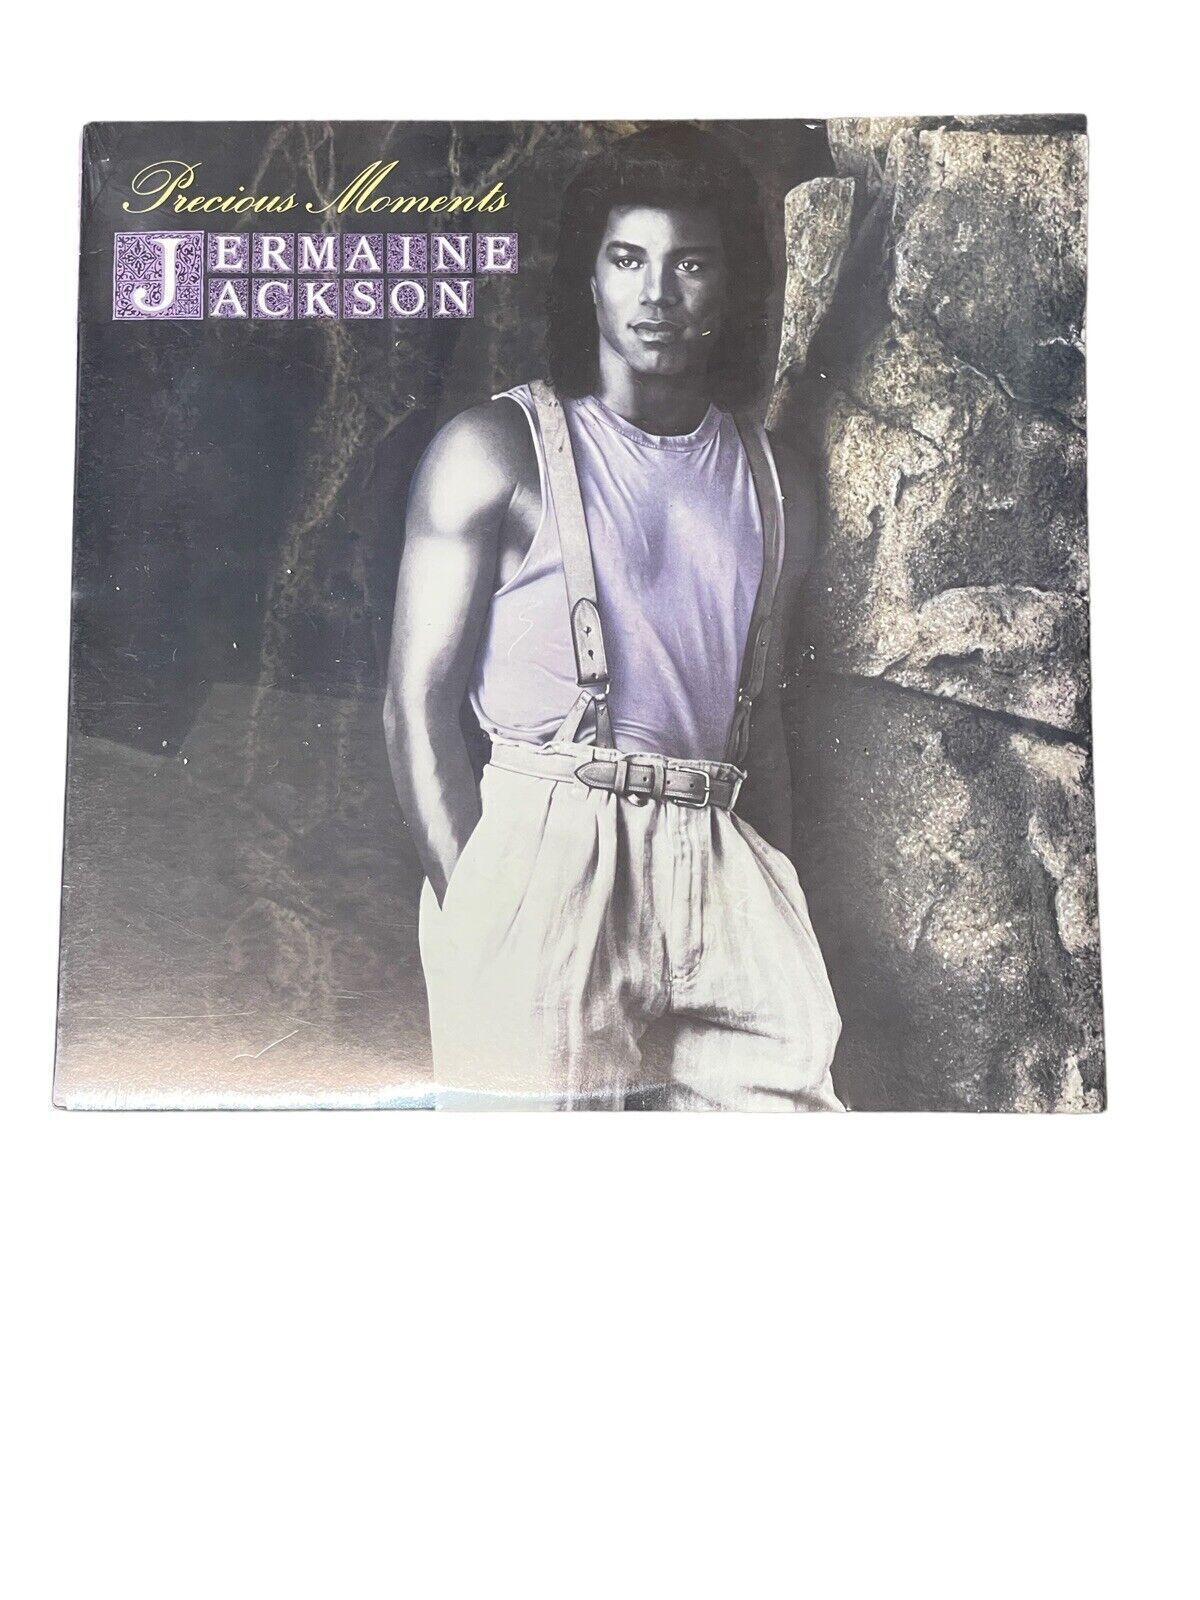 JERMAINE JACKSON - Precious Moments - Vinyl -NEW SEALED - RARE🎁